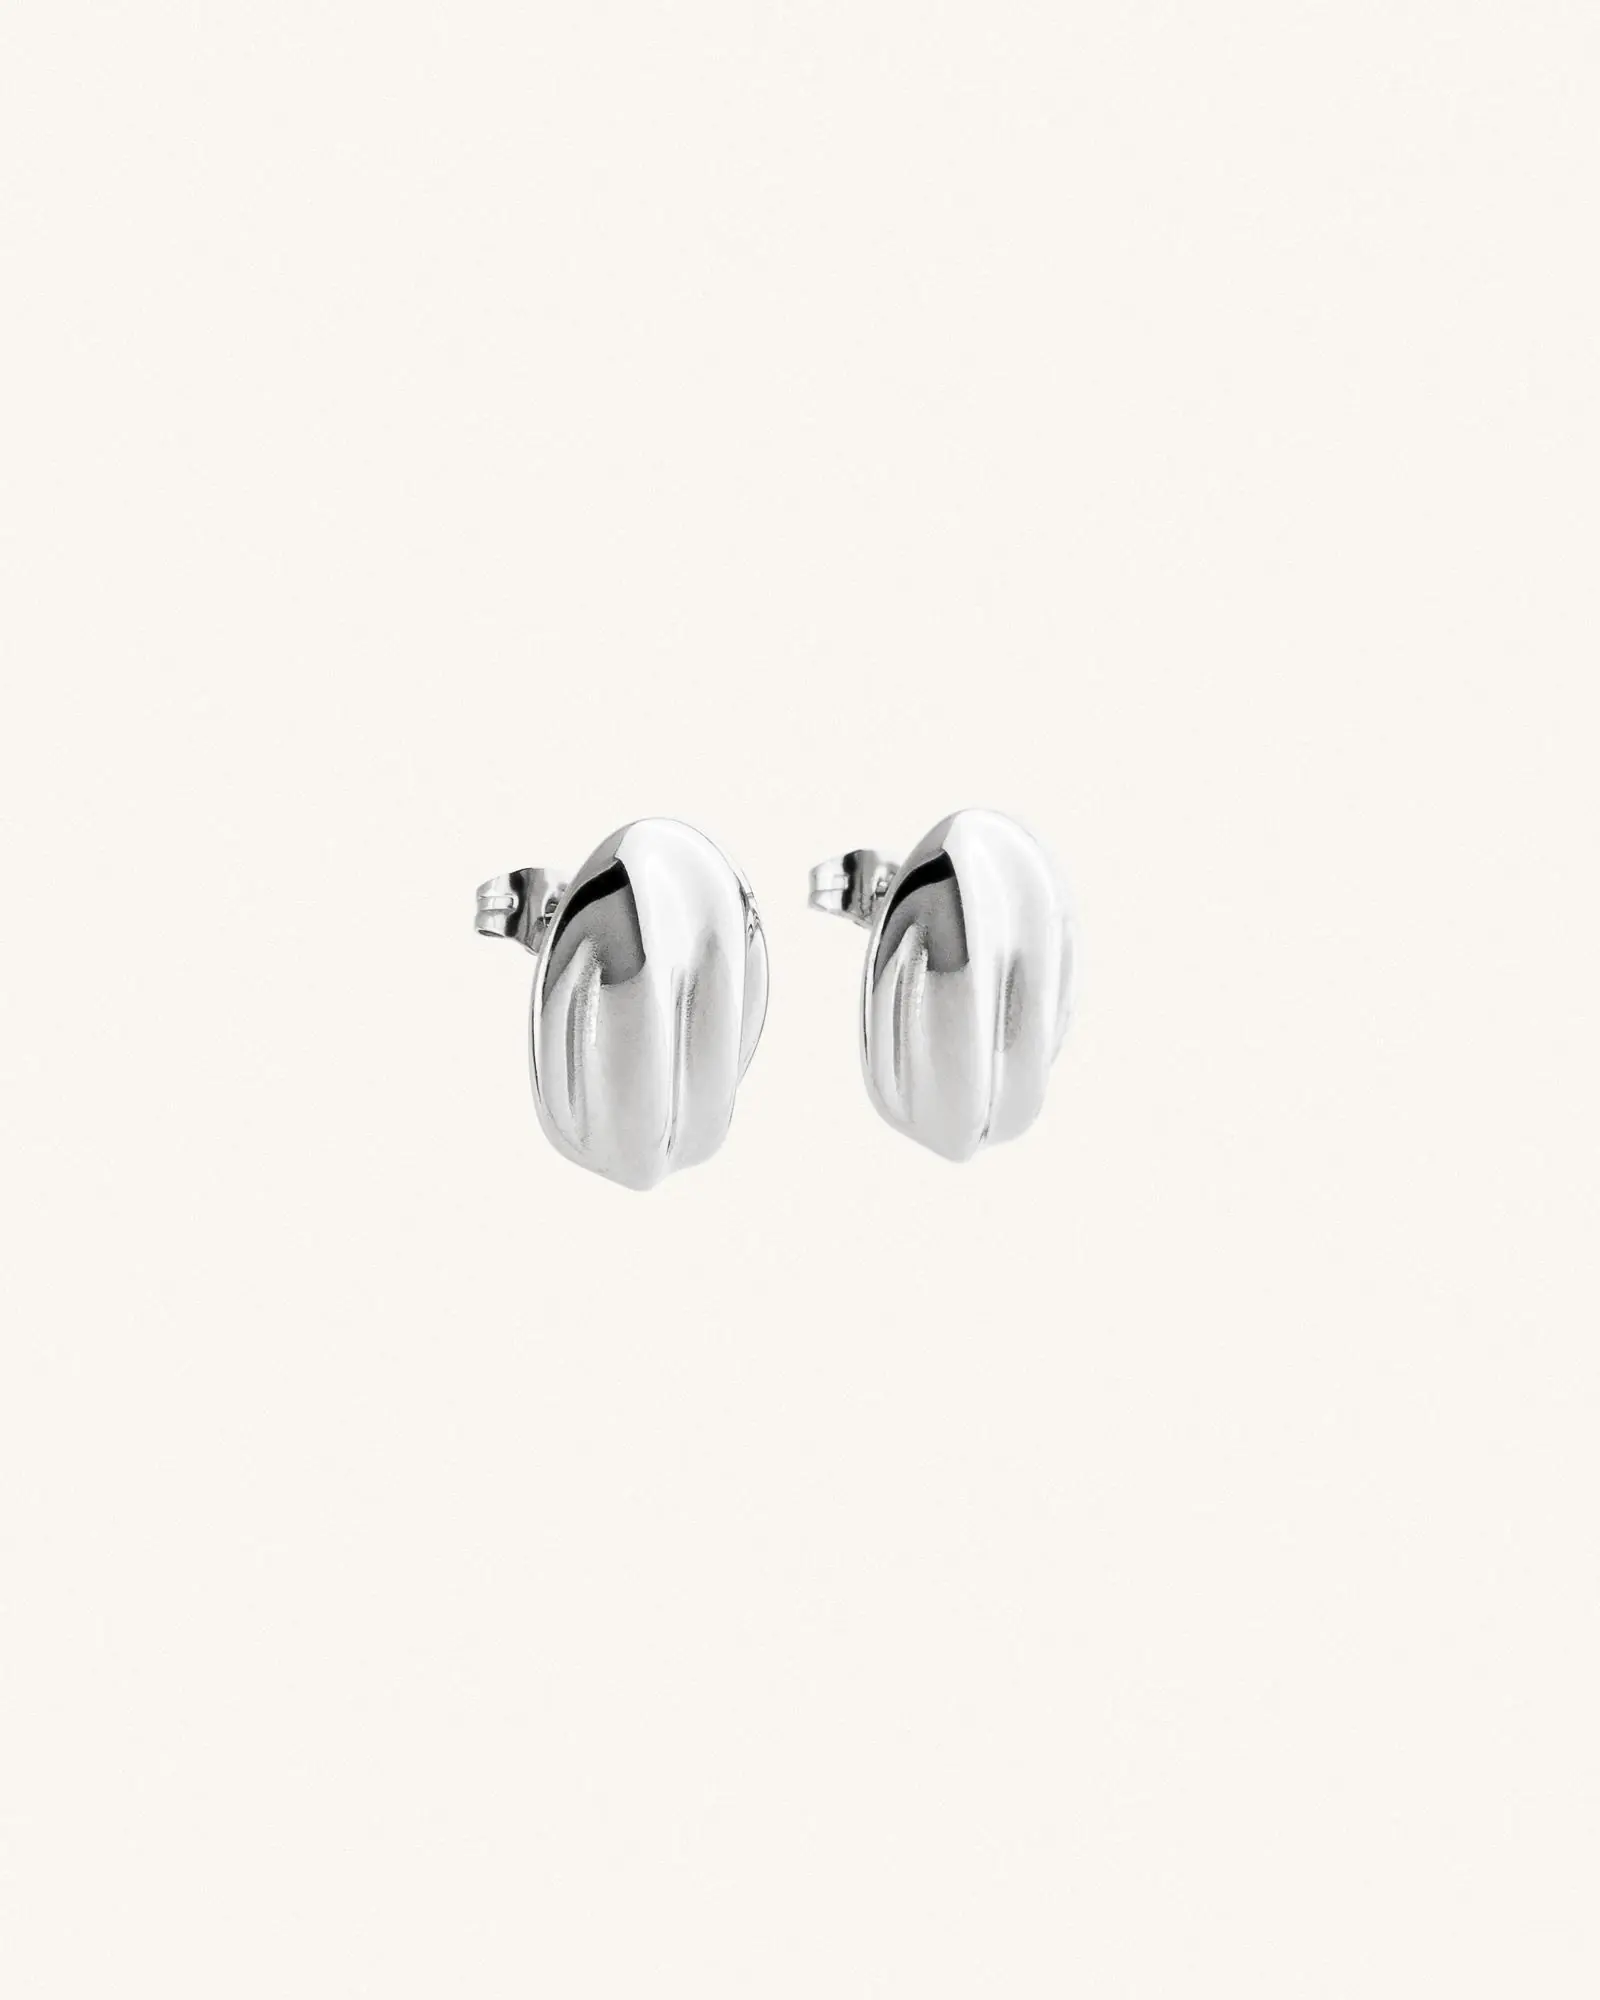 Εικονα fj_earrings_silver